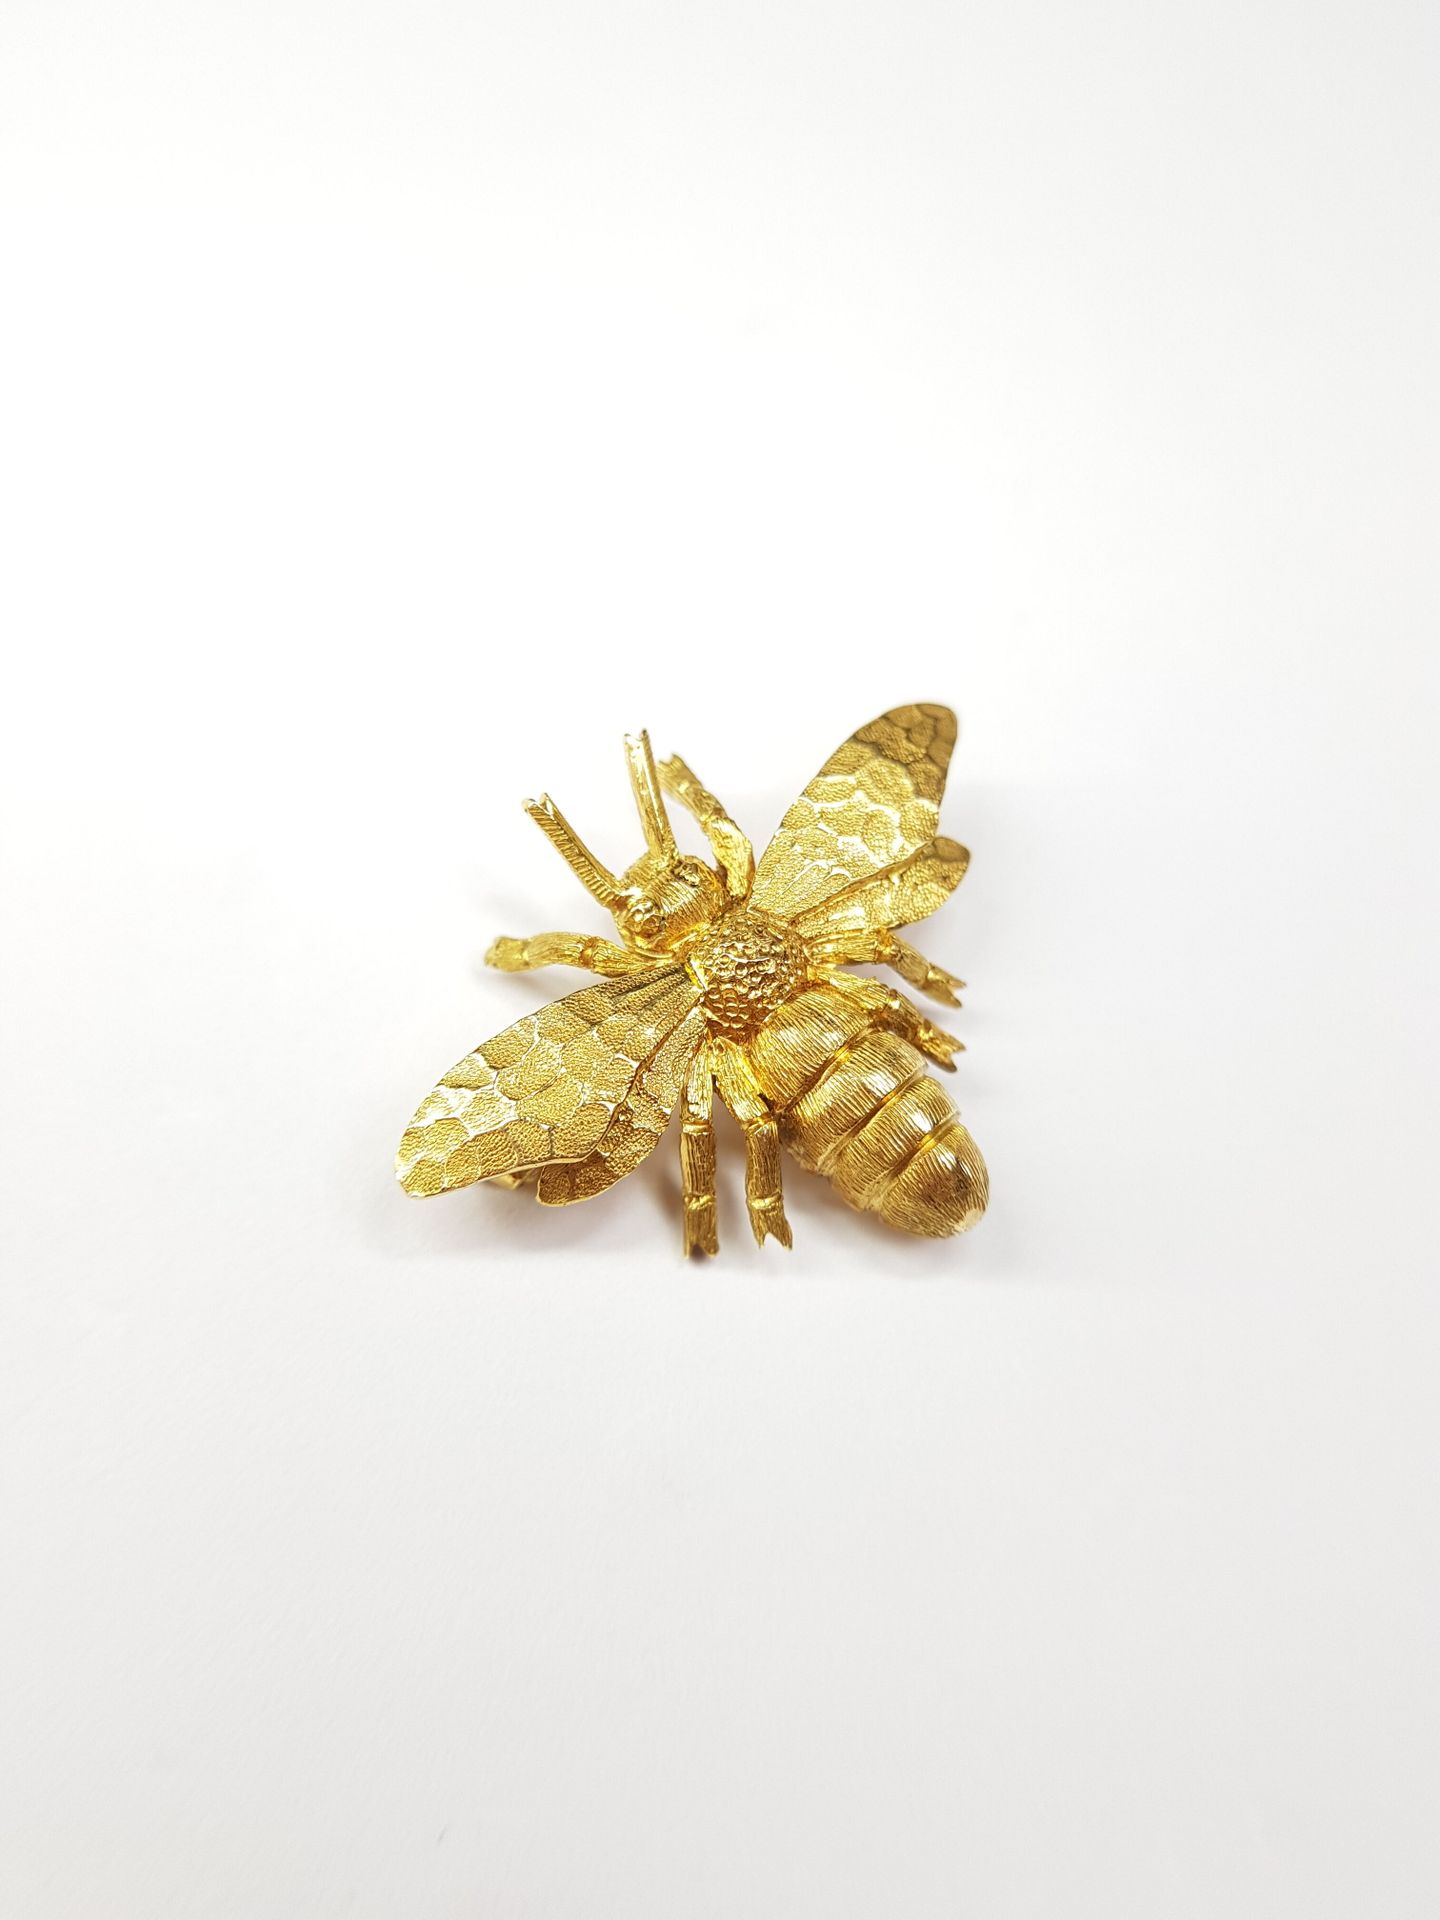 Null BROCHE en or 750 ‰ figurant une abeille.

Poids : 6,53 g

Longueur : 2 cm